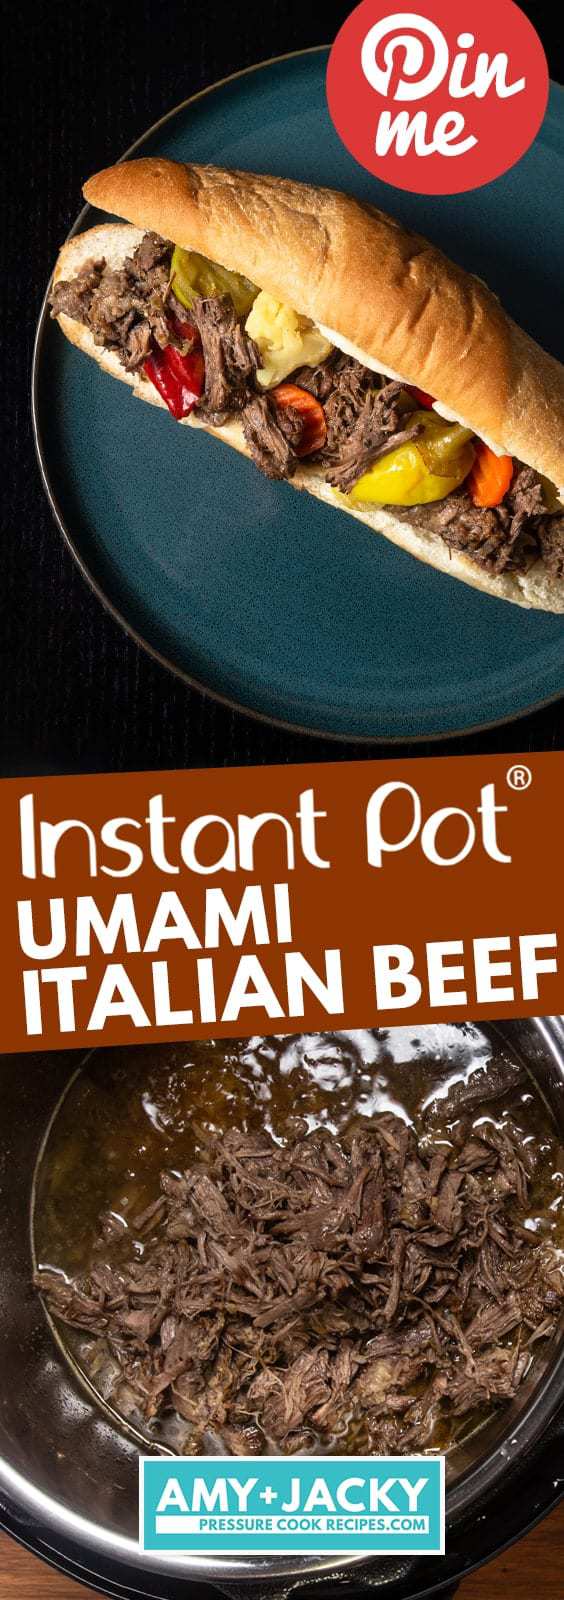 Instant Pot Italian Beef | Pressure Cooker Italian Beef | Instapot Italian Beef Sandwich | Italian Beef Recipe | Instant Pot Beef Recipes | Instant Pot Recipes | Pressure Cooker Recipes #instantpot #beef #recipe #healthy #easy